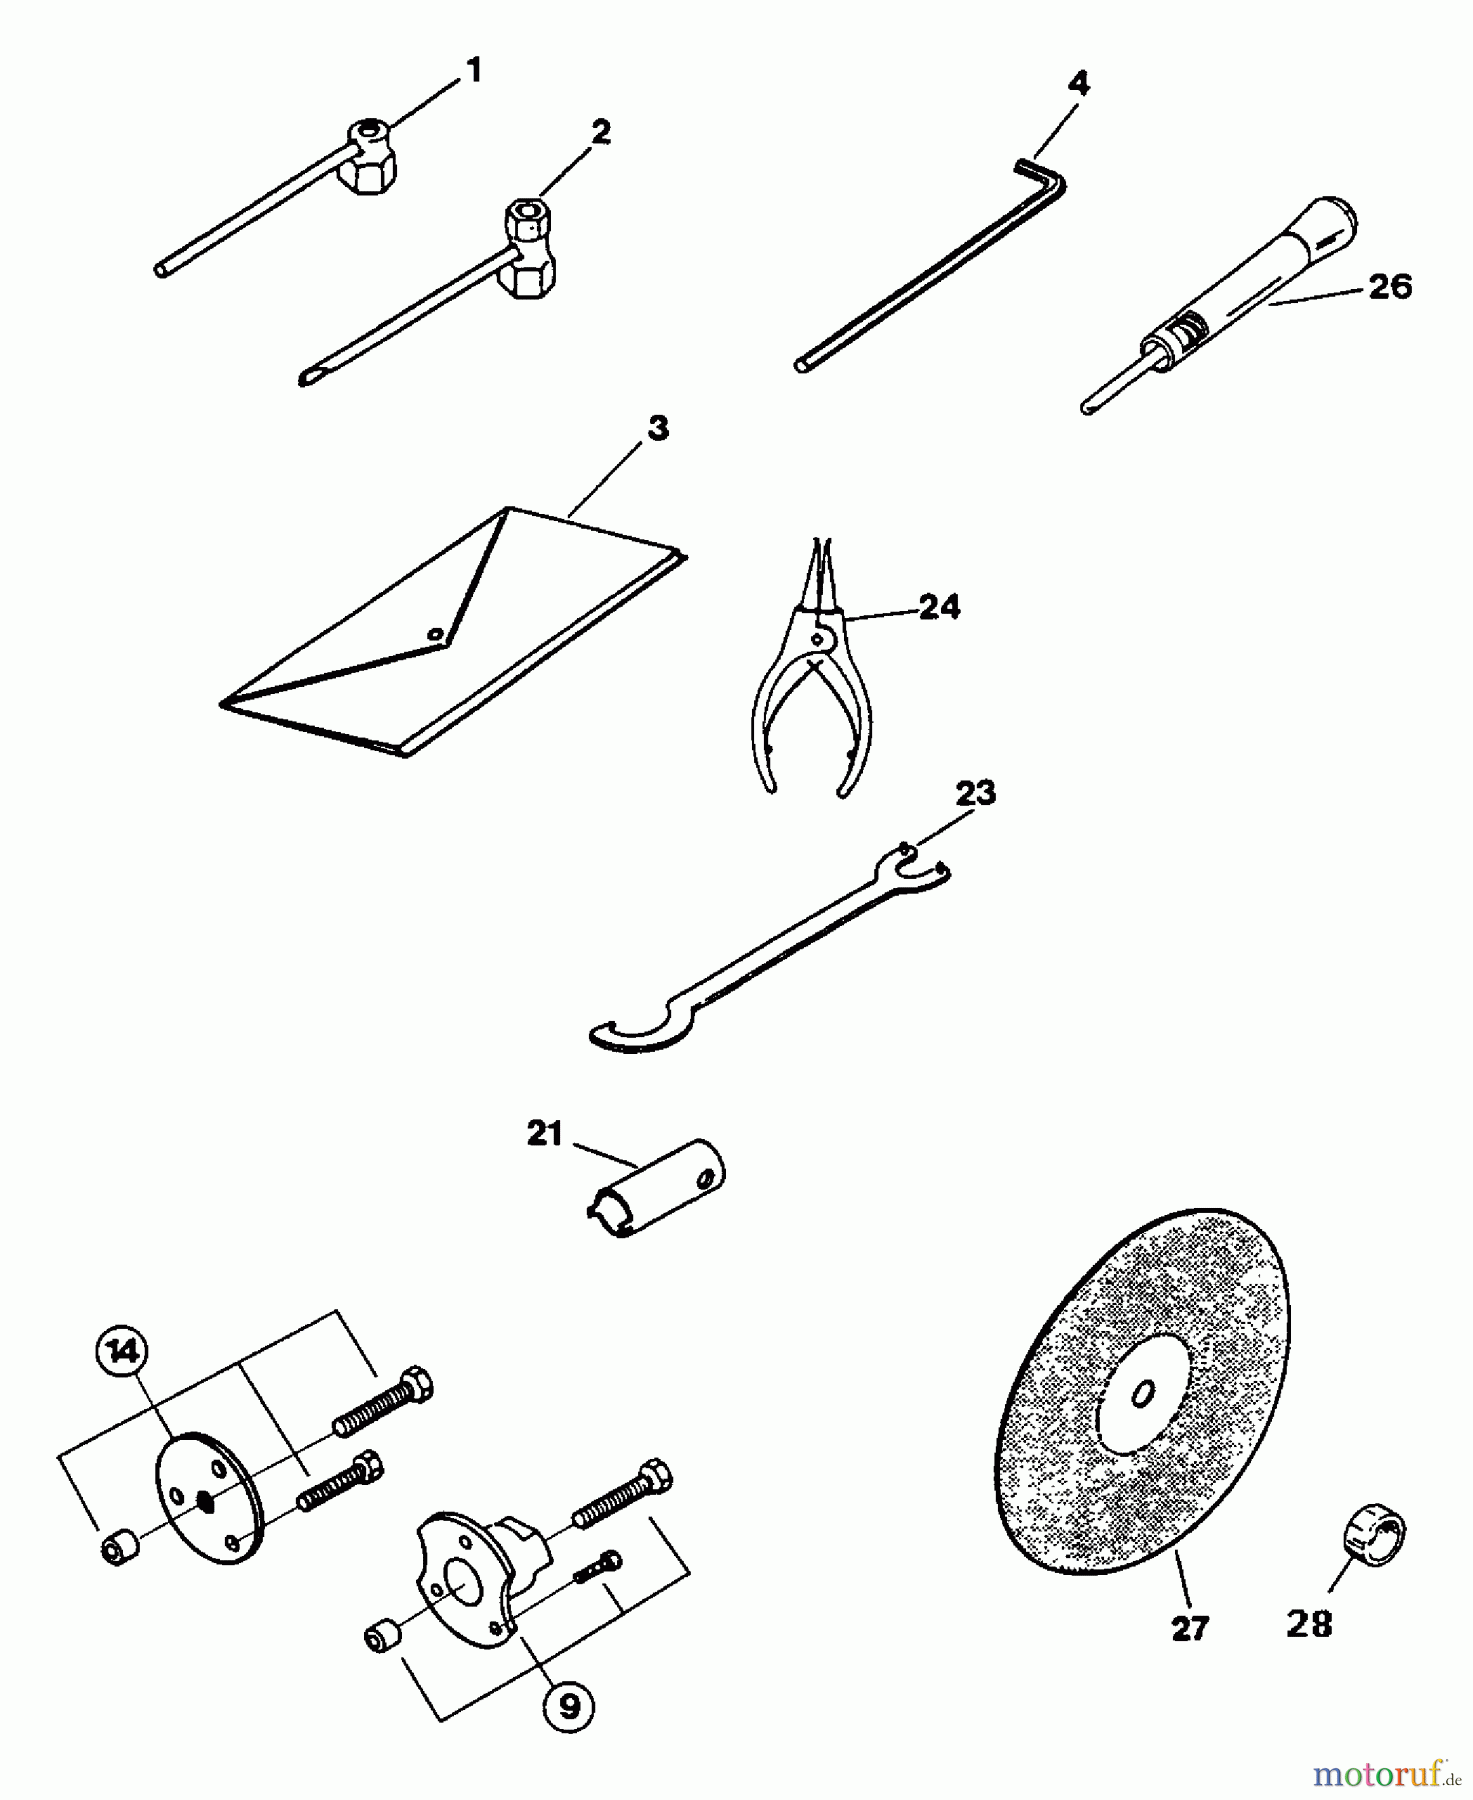  Tanaka Kappsägen EHC-140 - Tanaka Cut-Off Saw Tools/Accessories